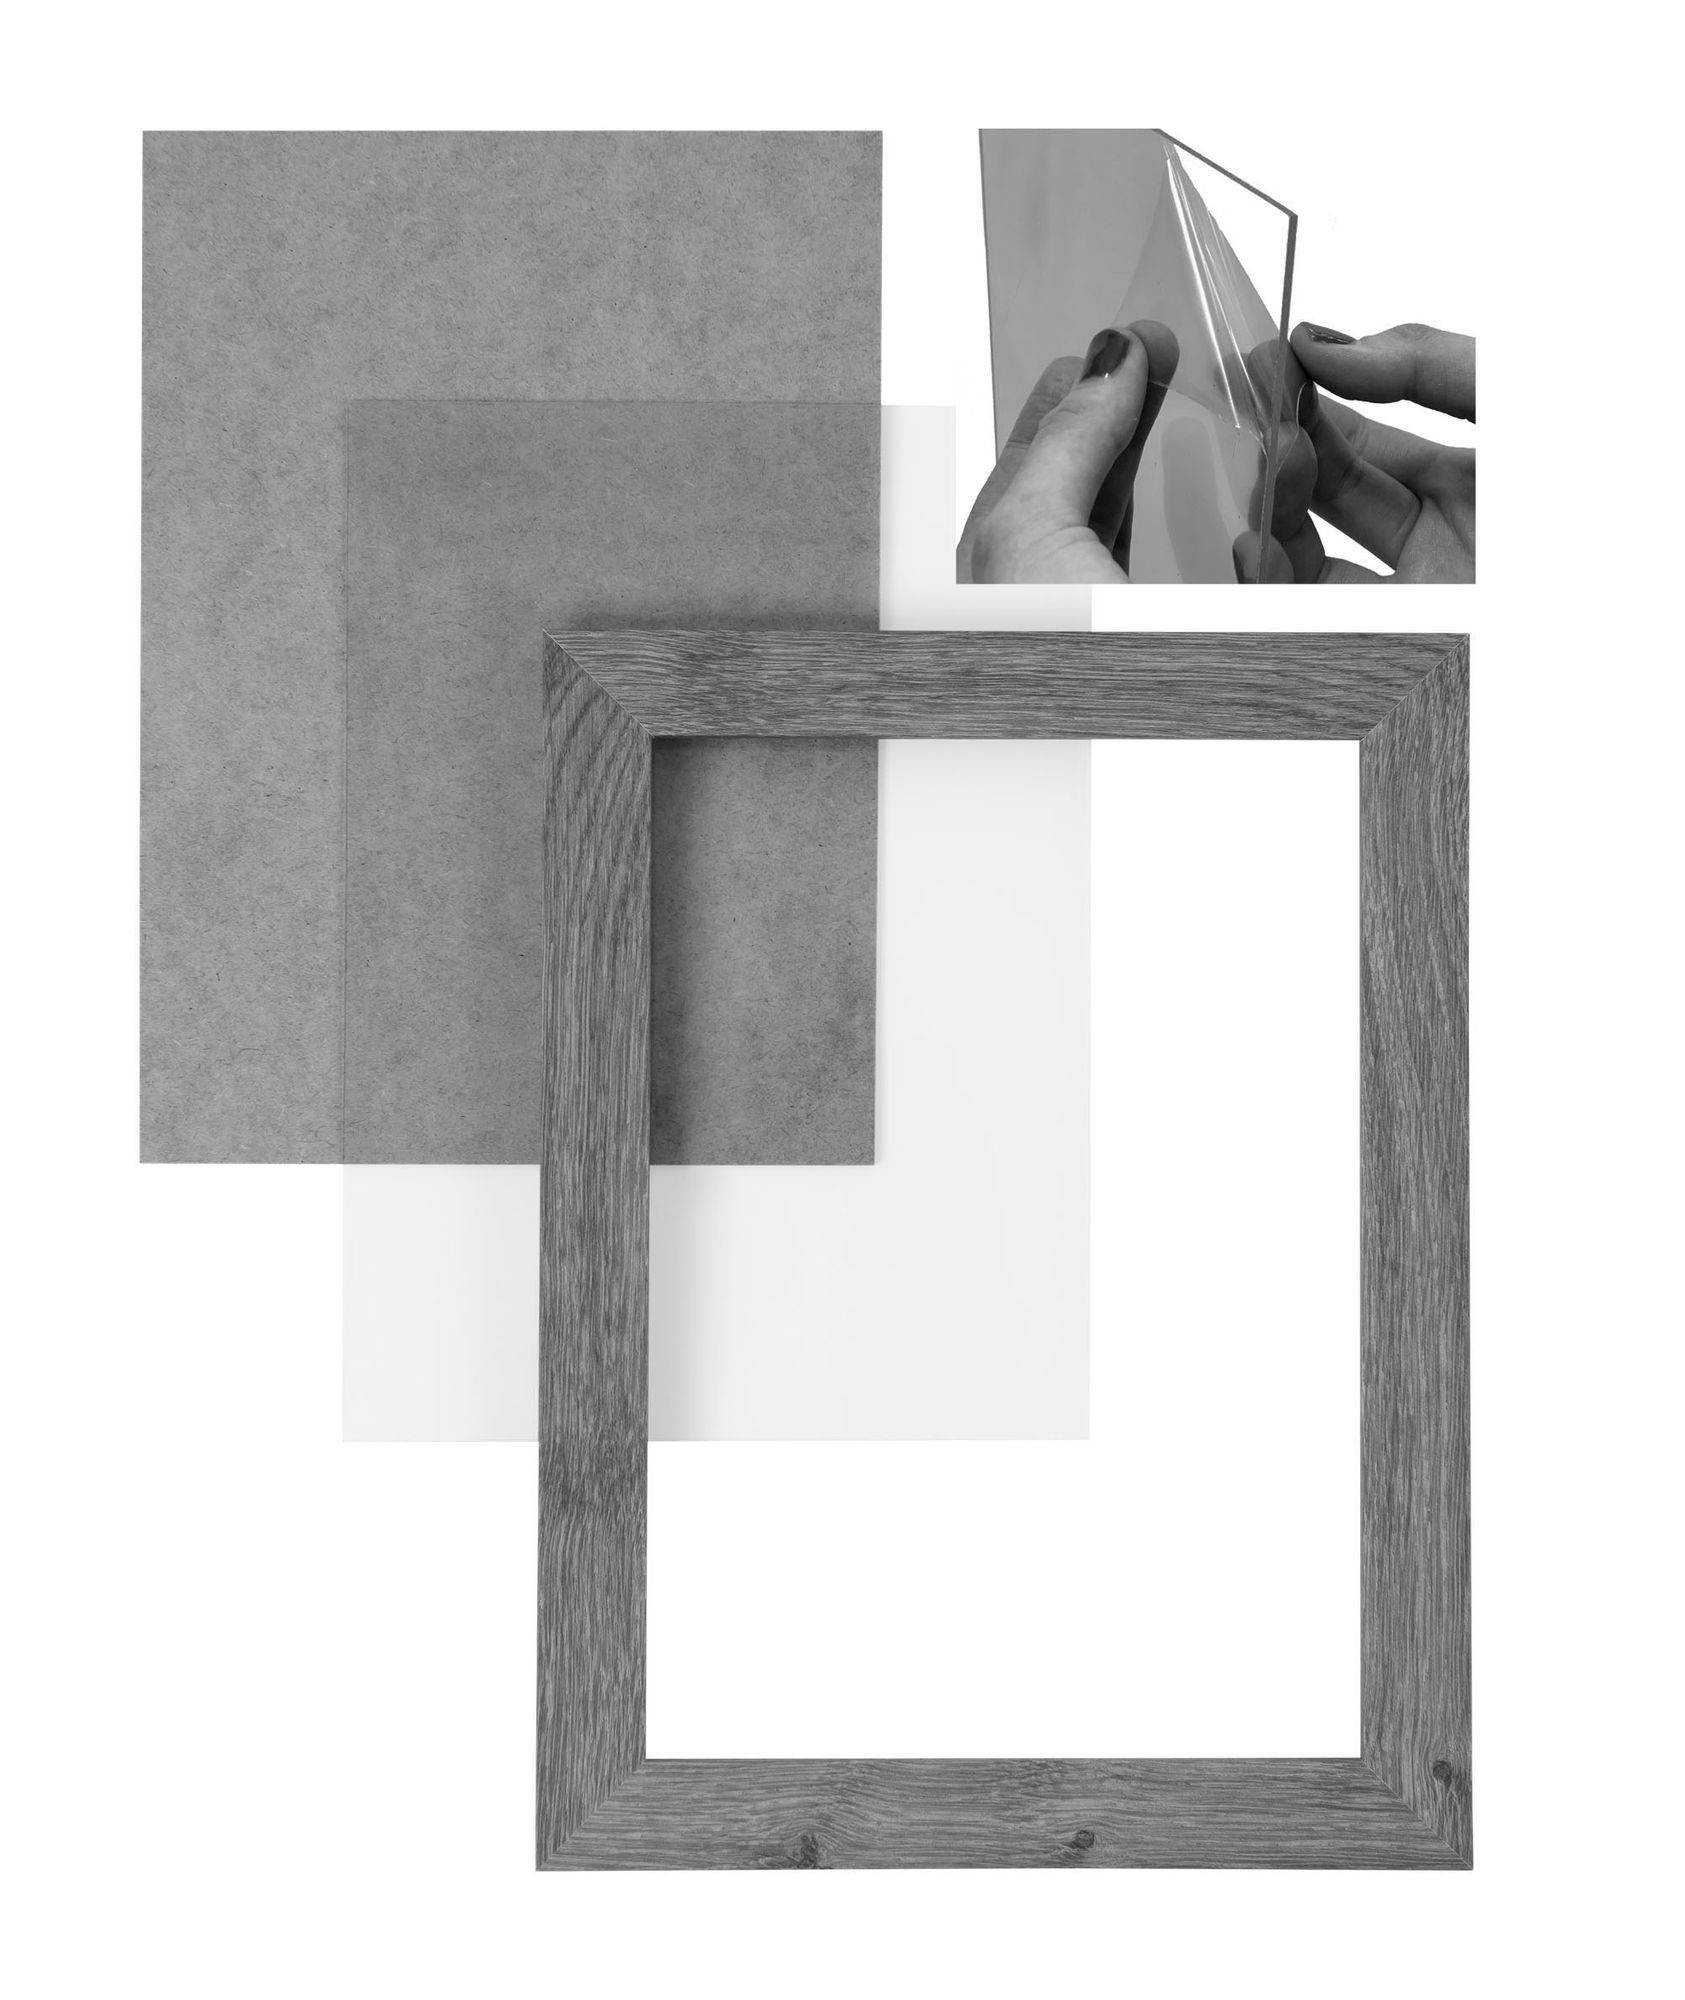 Maß Holz Bilderrahmen nach FSC® in stahlgrau Rahmen 15x30 handgefertigt CLAMARO und Rückwand Bilderrahmen 'Collage' Acrylglas, Moderner Clamaro inkl. eckiger Aufhänger MDF